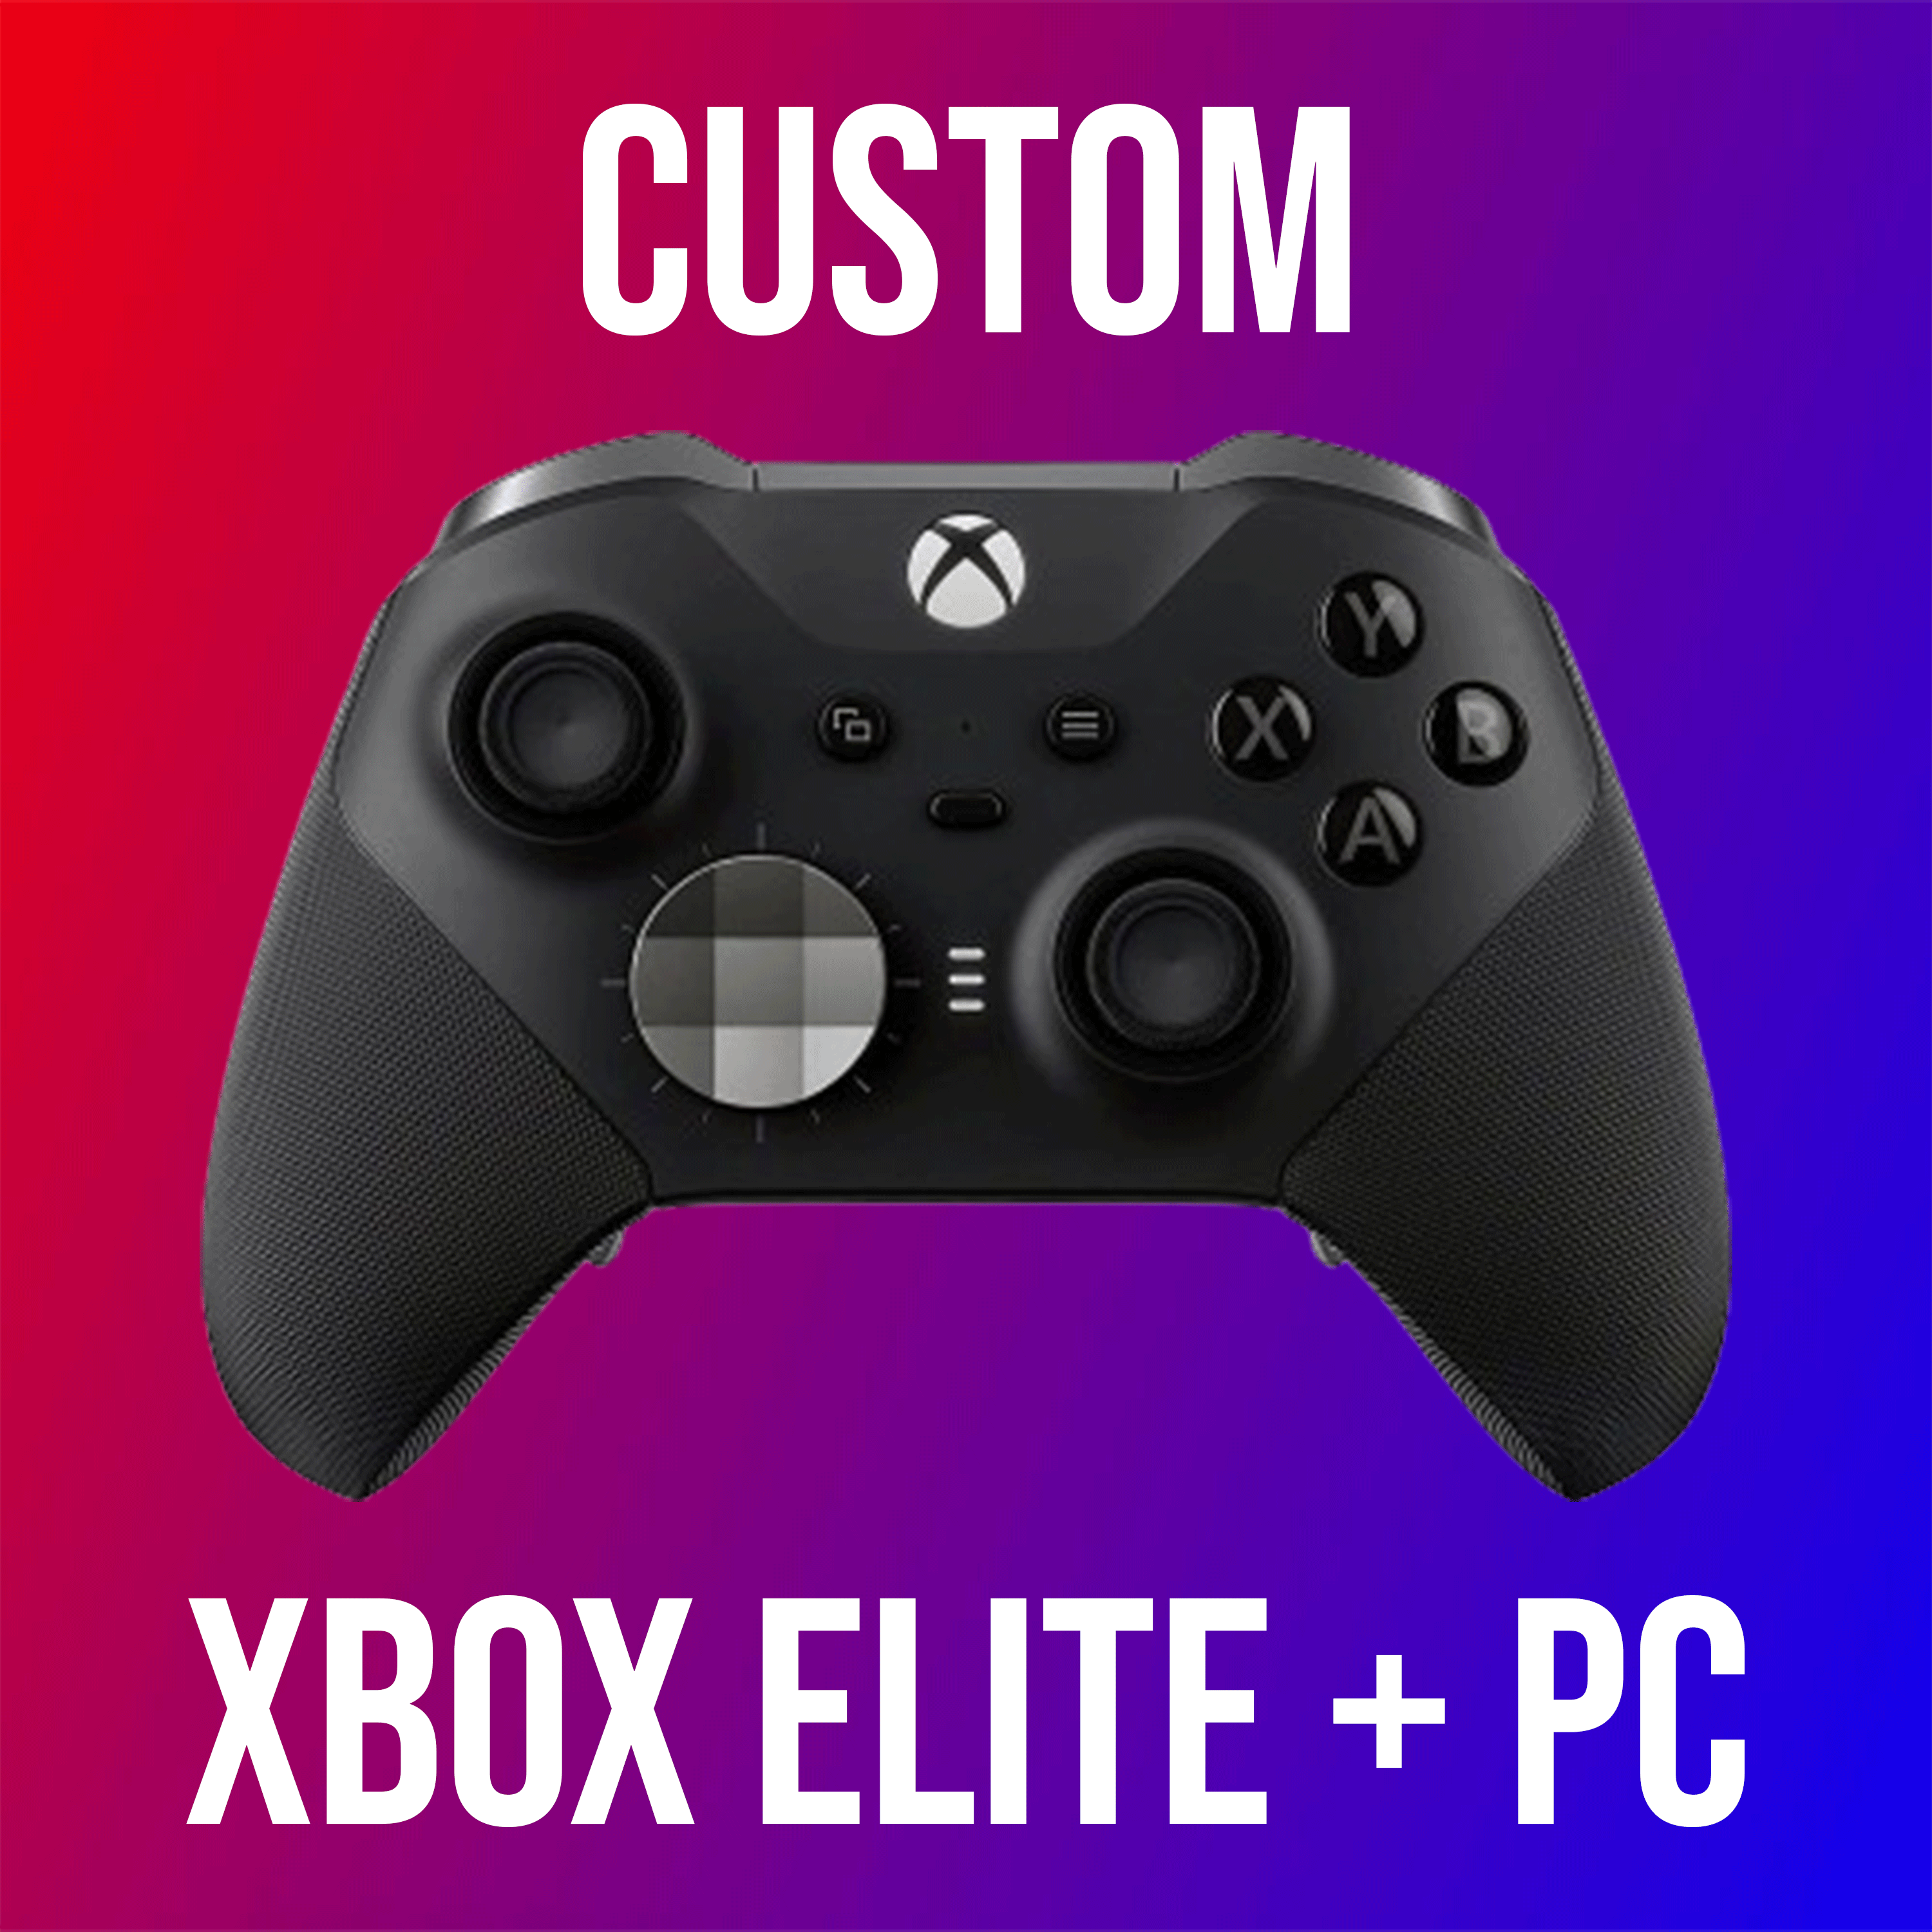 Custom XBOX Elite + PC